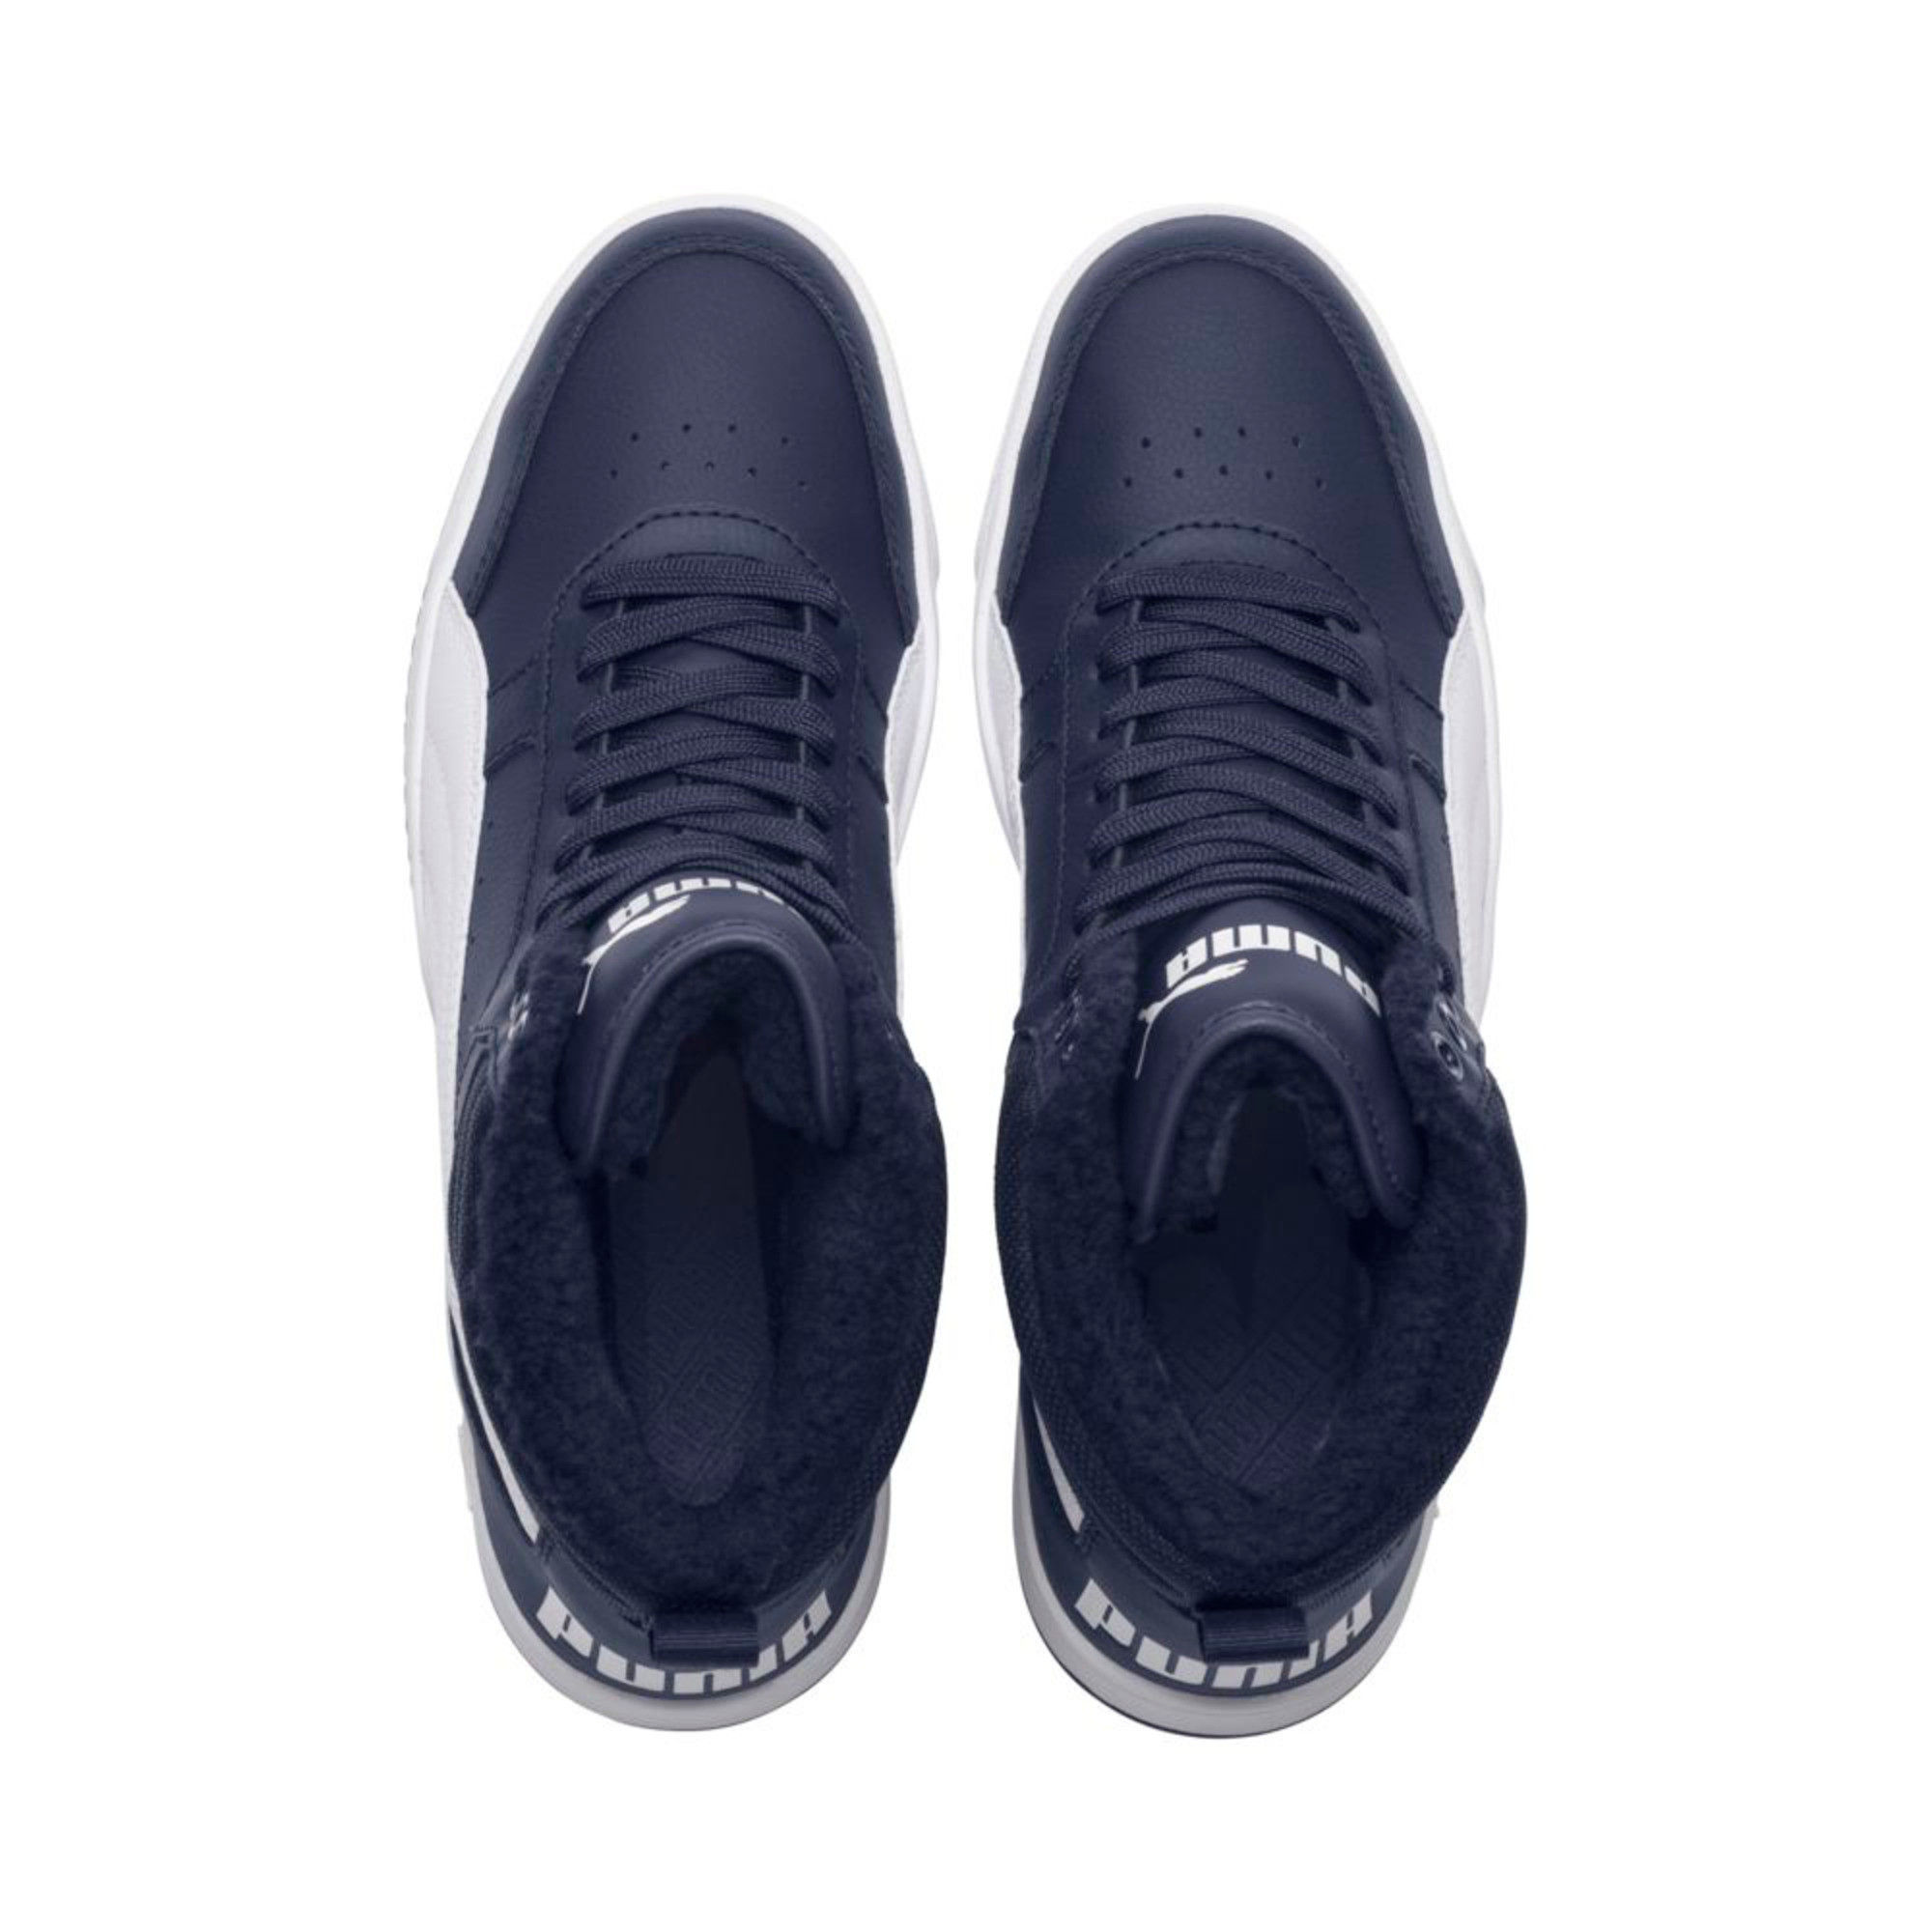 Buy Puma Rebound Street V2 Fur High Top Unisex Black Sneakers - 7 Online